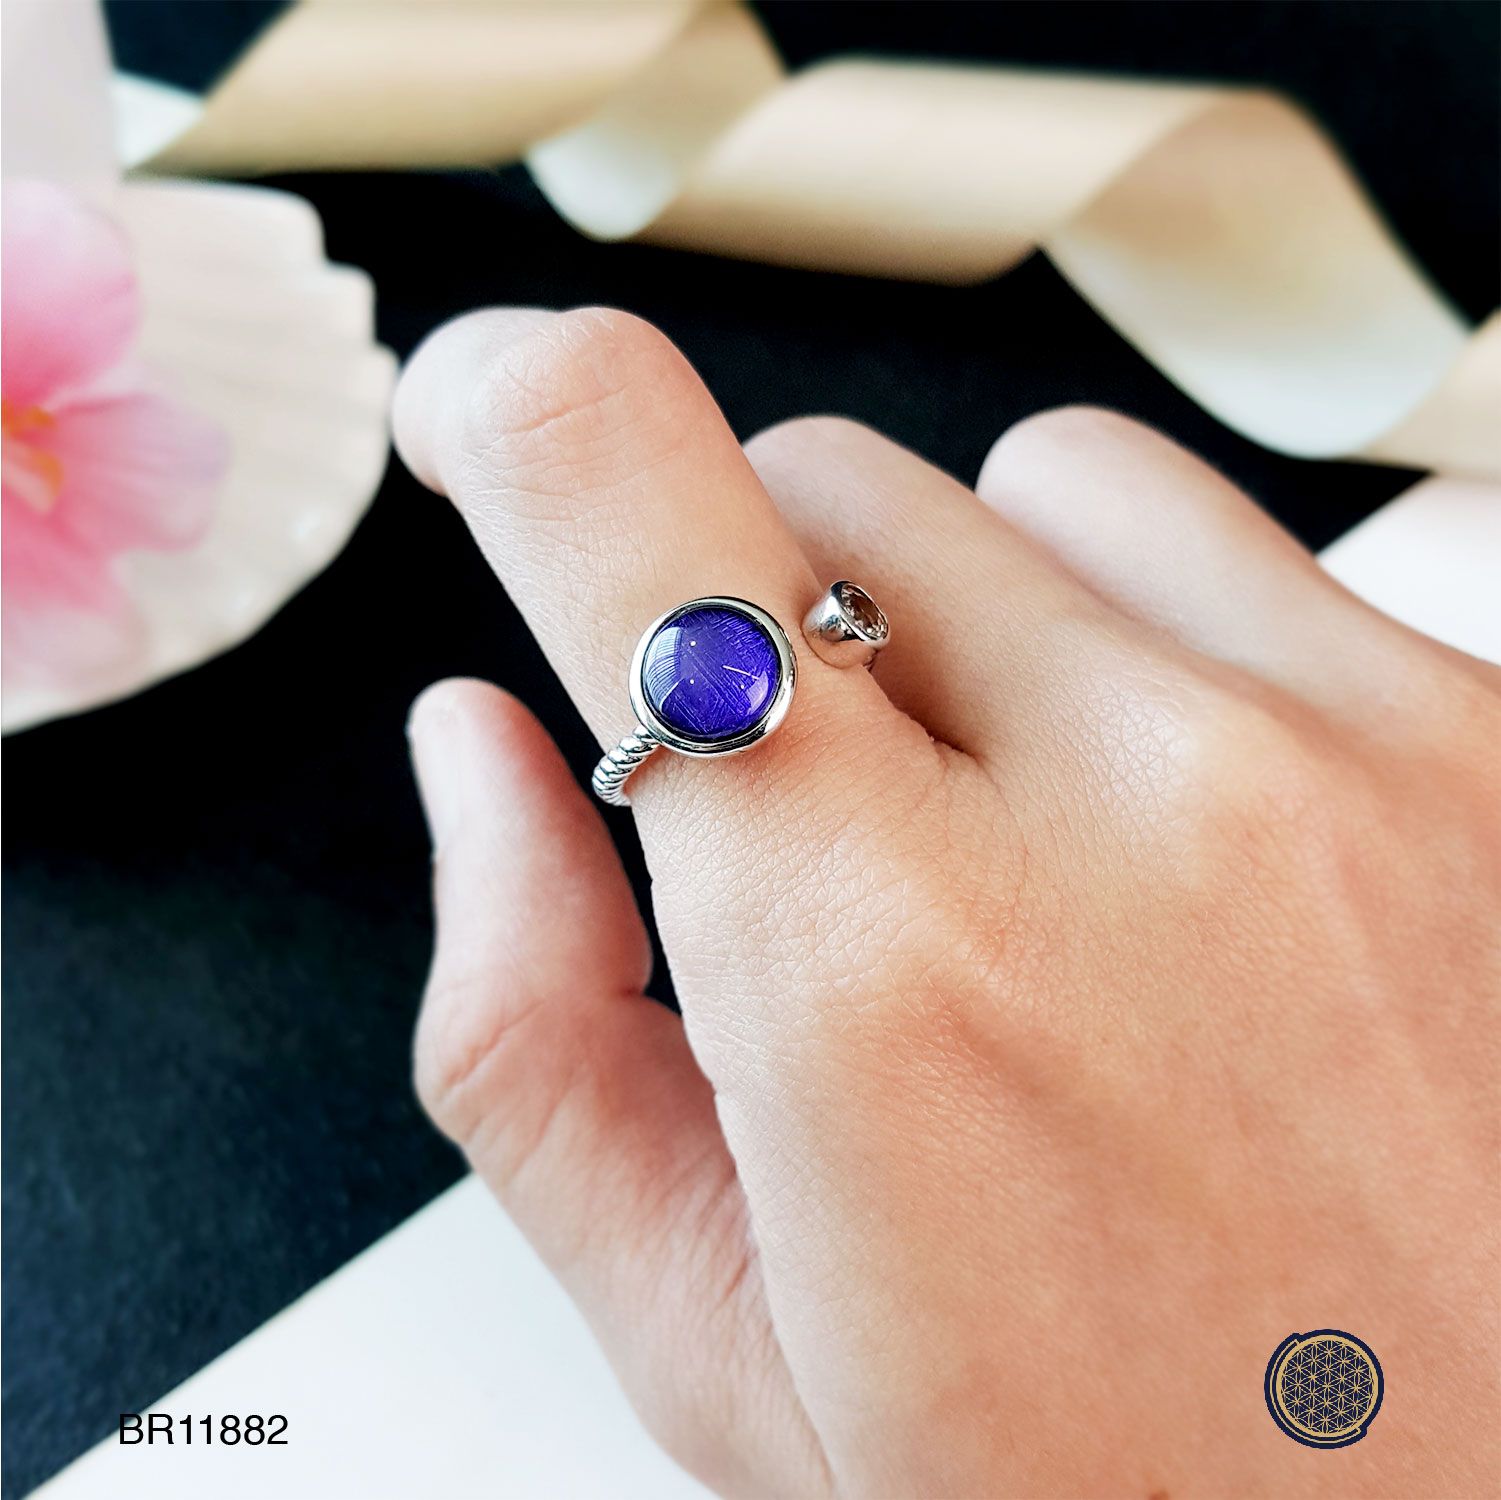 10mm 天铁圆形搭配白水晶-紫色戒指